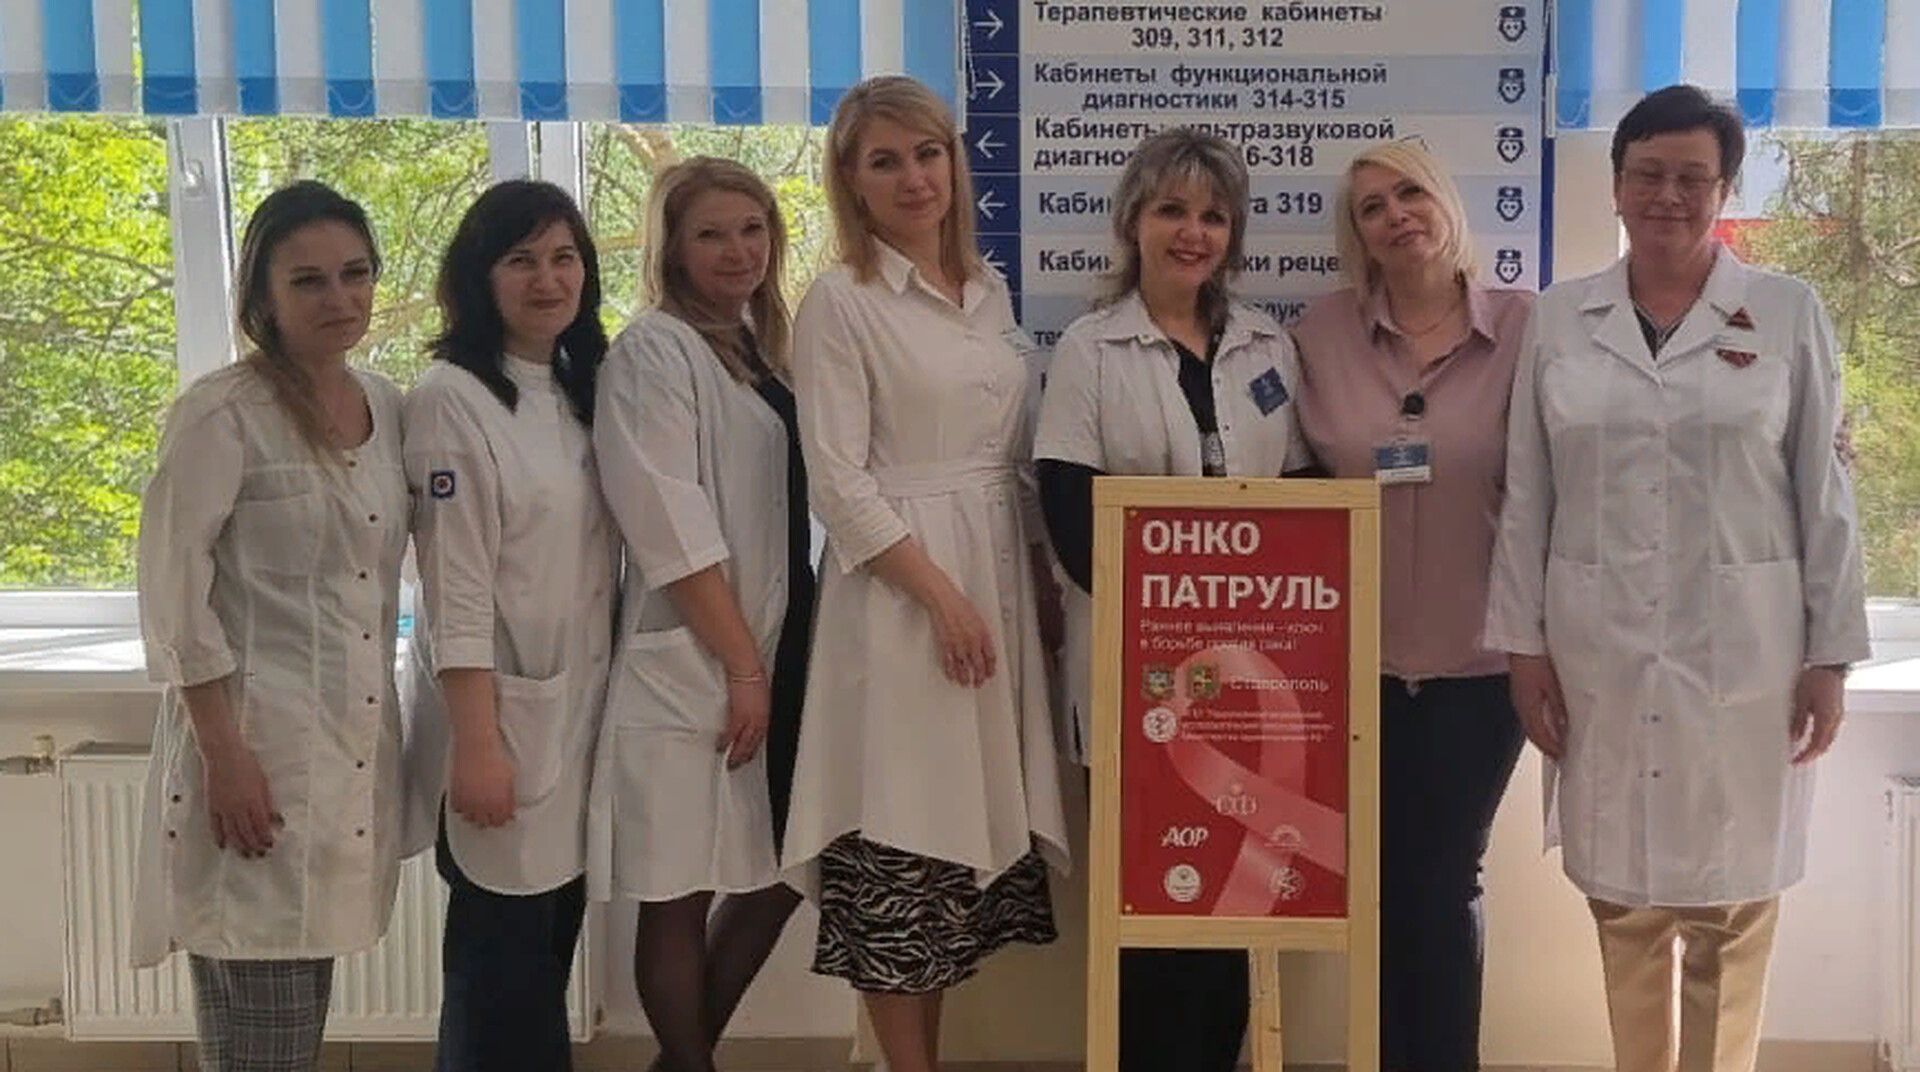 Более 500 ставропольцев осмотрели врачи-онкологи в рамках всероссийской акции Онкопатруль